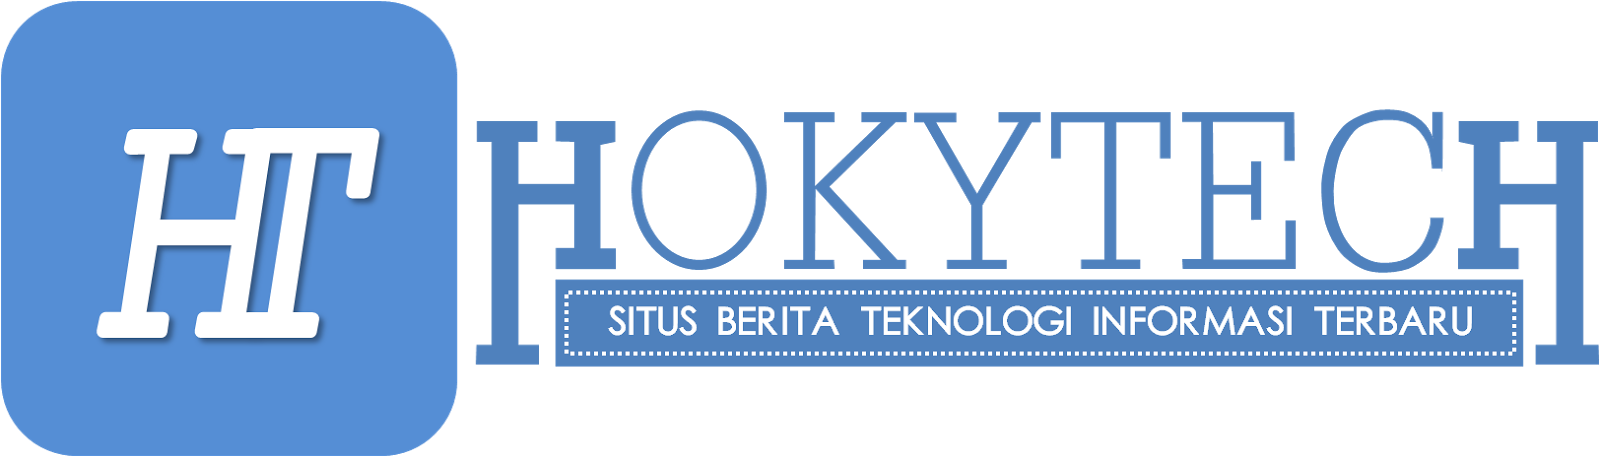 HOKYTECH - Portal Berita Gadget dan Teknologi Terbaru